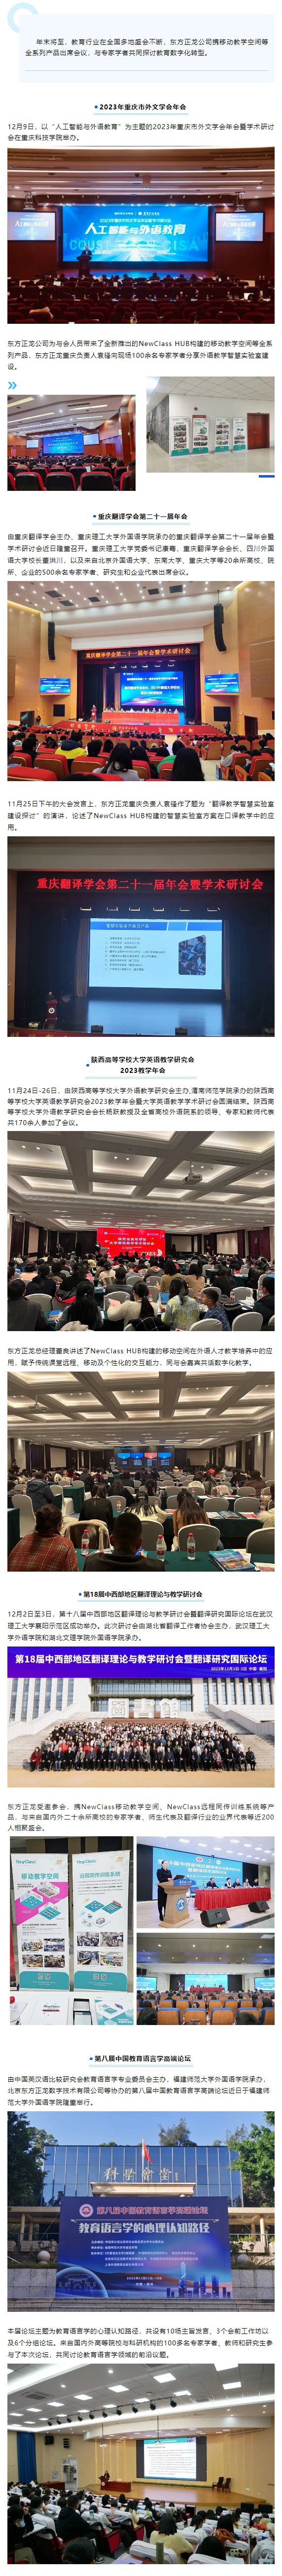 深化产教融合，助力教育数字化转型——百度百科亮相重庆、陕西、湖北、福建教育盛会